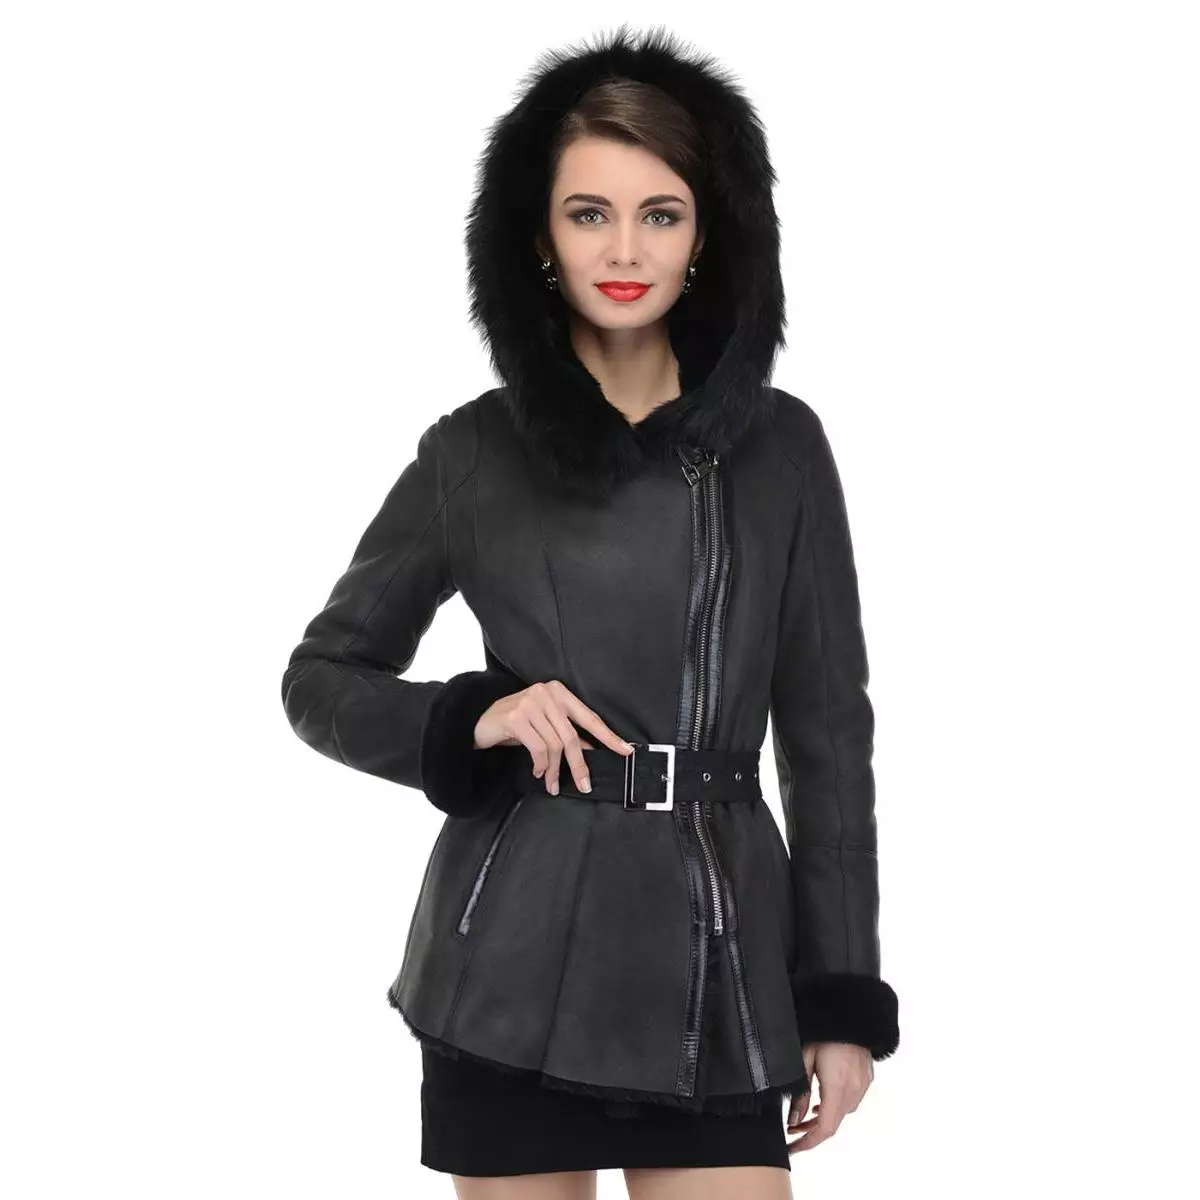 Calyaev's Coat (50 fotos): models de dona de Fur Factory Kalyaev, crítiques 382_8